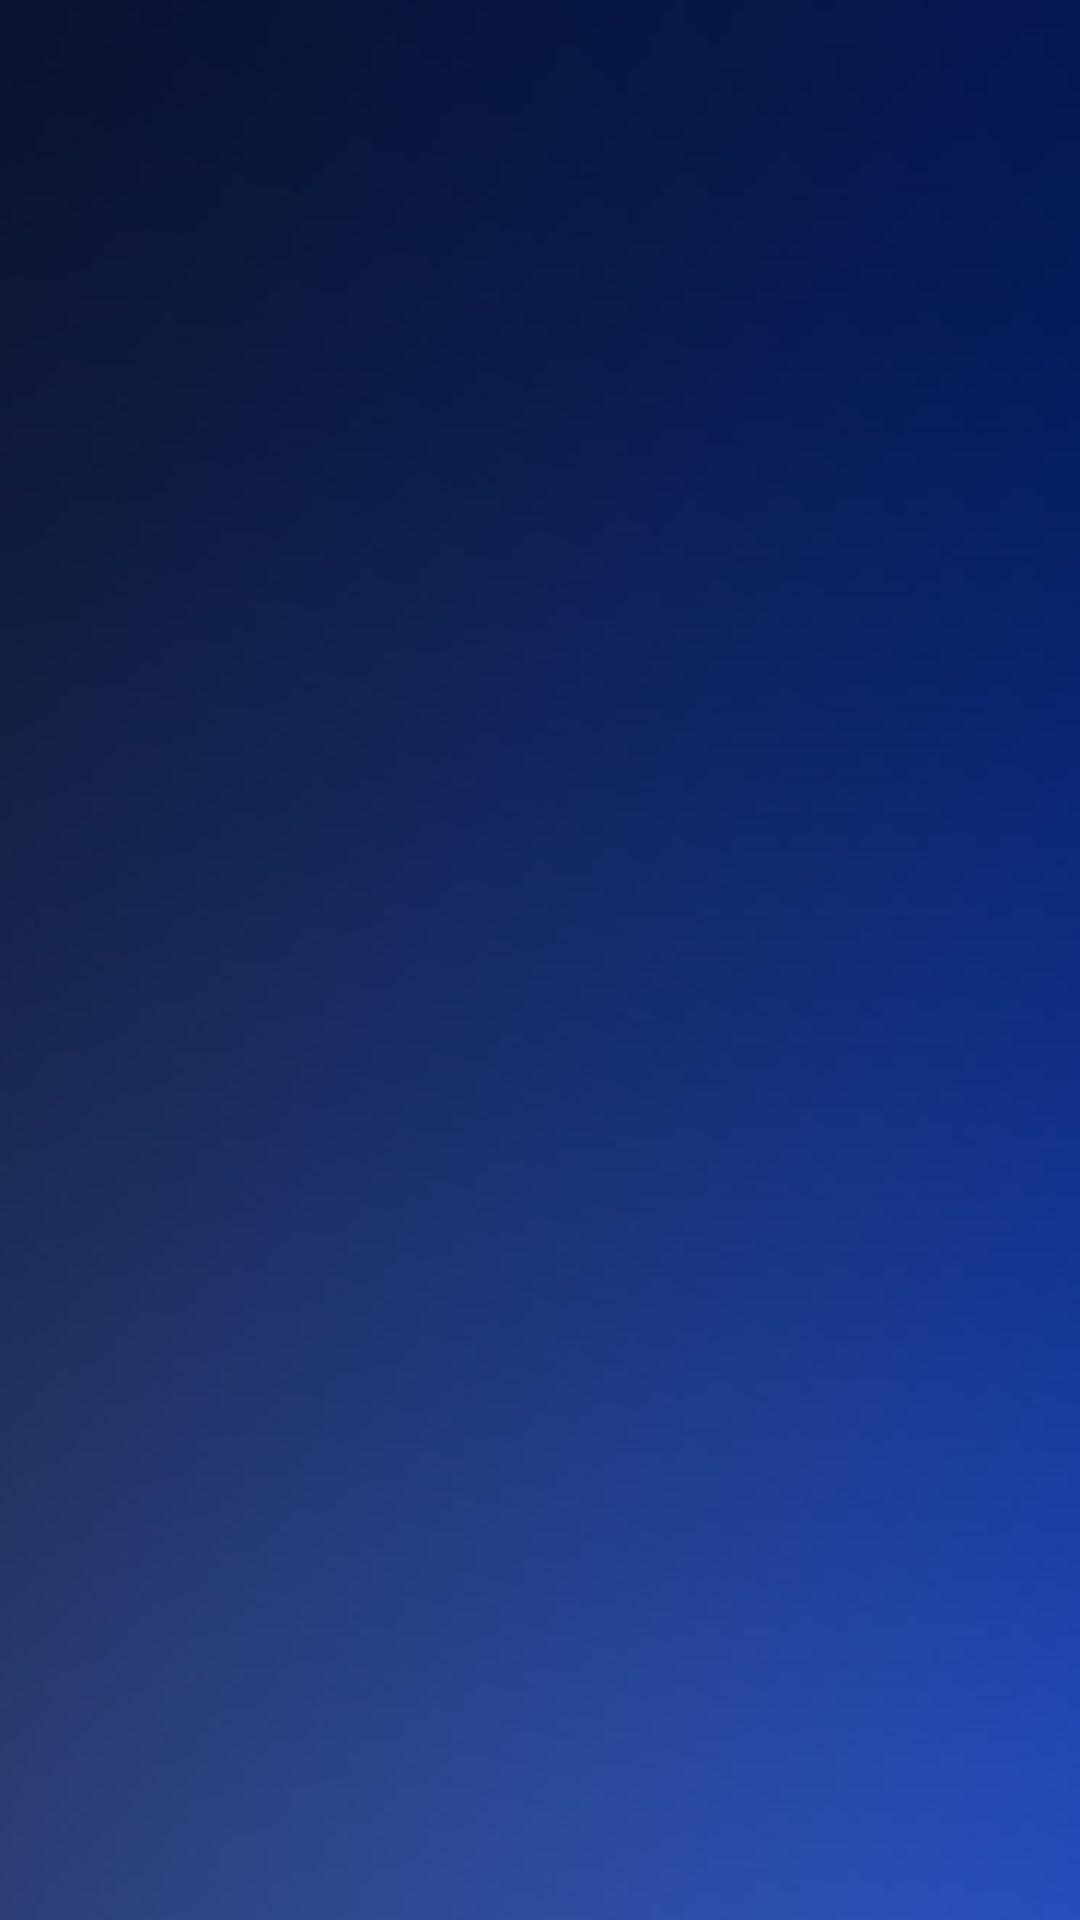 Pure Dark Blue Ocean Gradation Blur Background iPhone